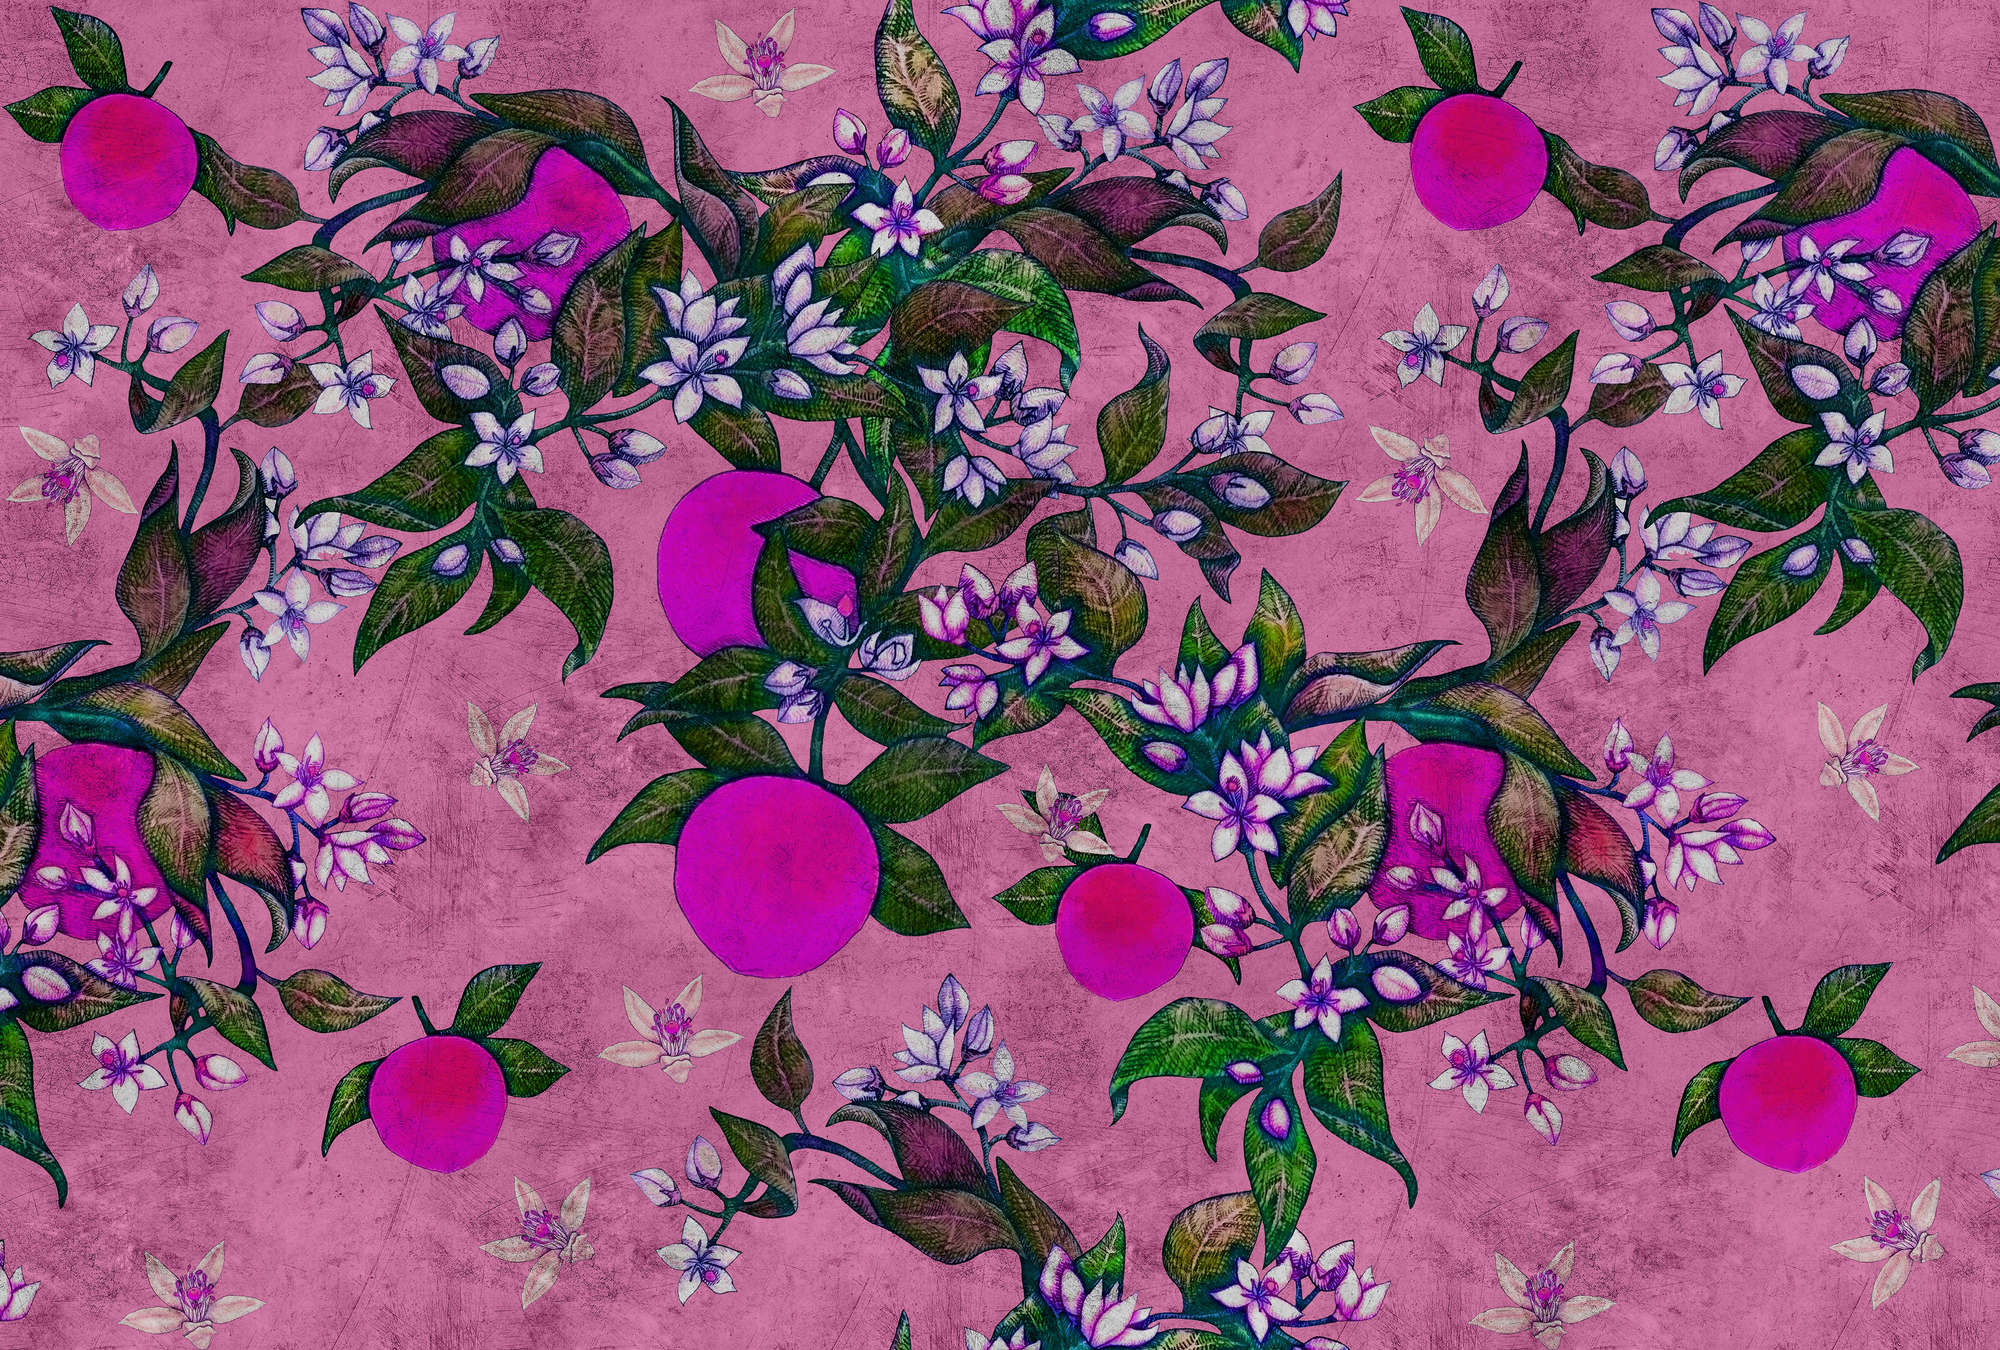             Grapefruit Tree 2 - Fotomurali con pompelmo e fiori dalla texture graffiante - Rosa, Viola | Pile liscio Pearl
        